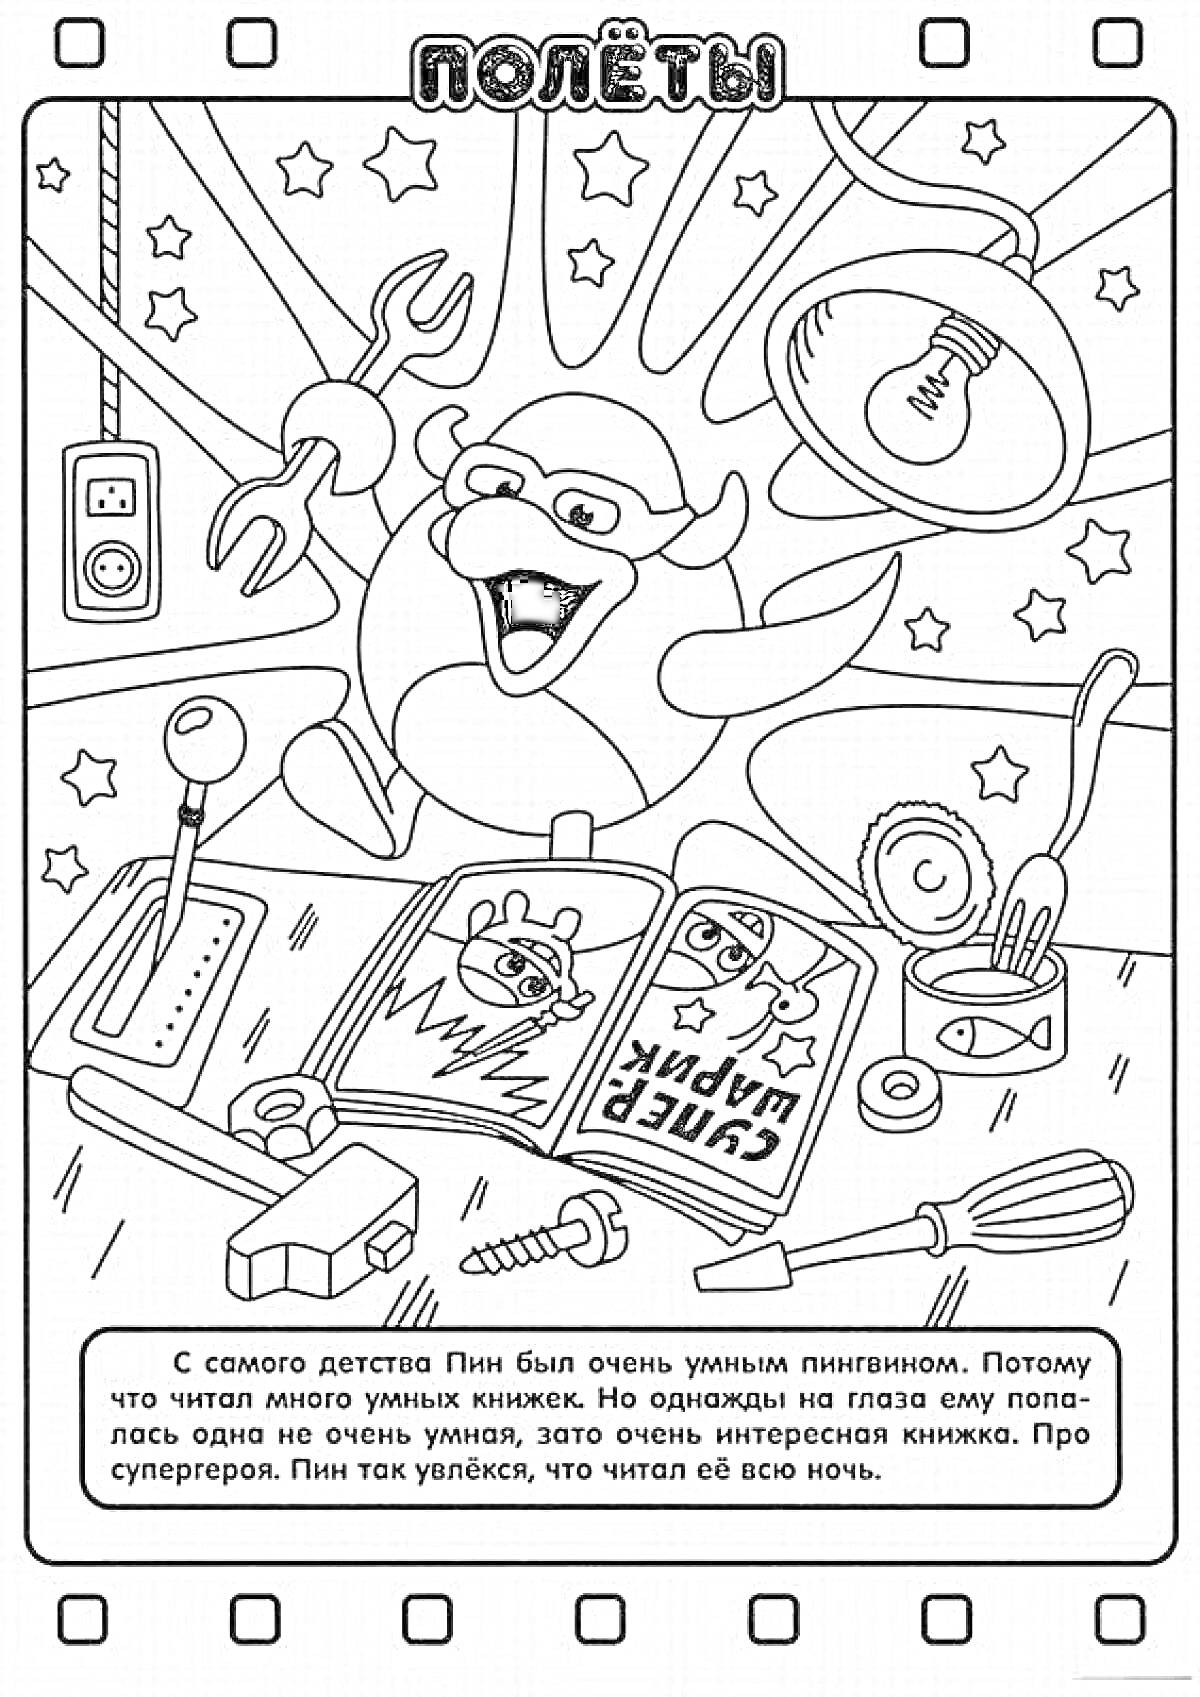 Раскраска Пин с книгой про супергероев, отвертка, молоток, гаечный ключ, лампочка, мерная лента, шестеренки, ручка, звездочки